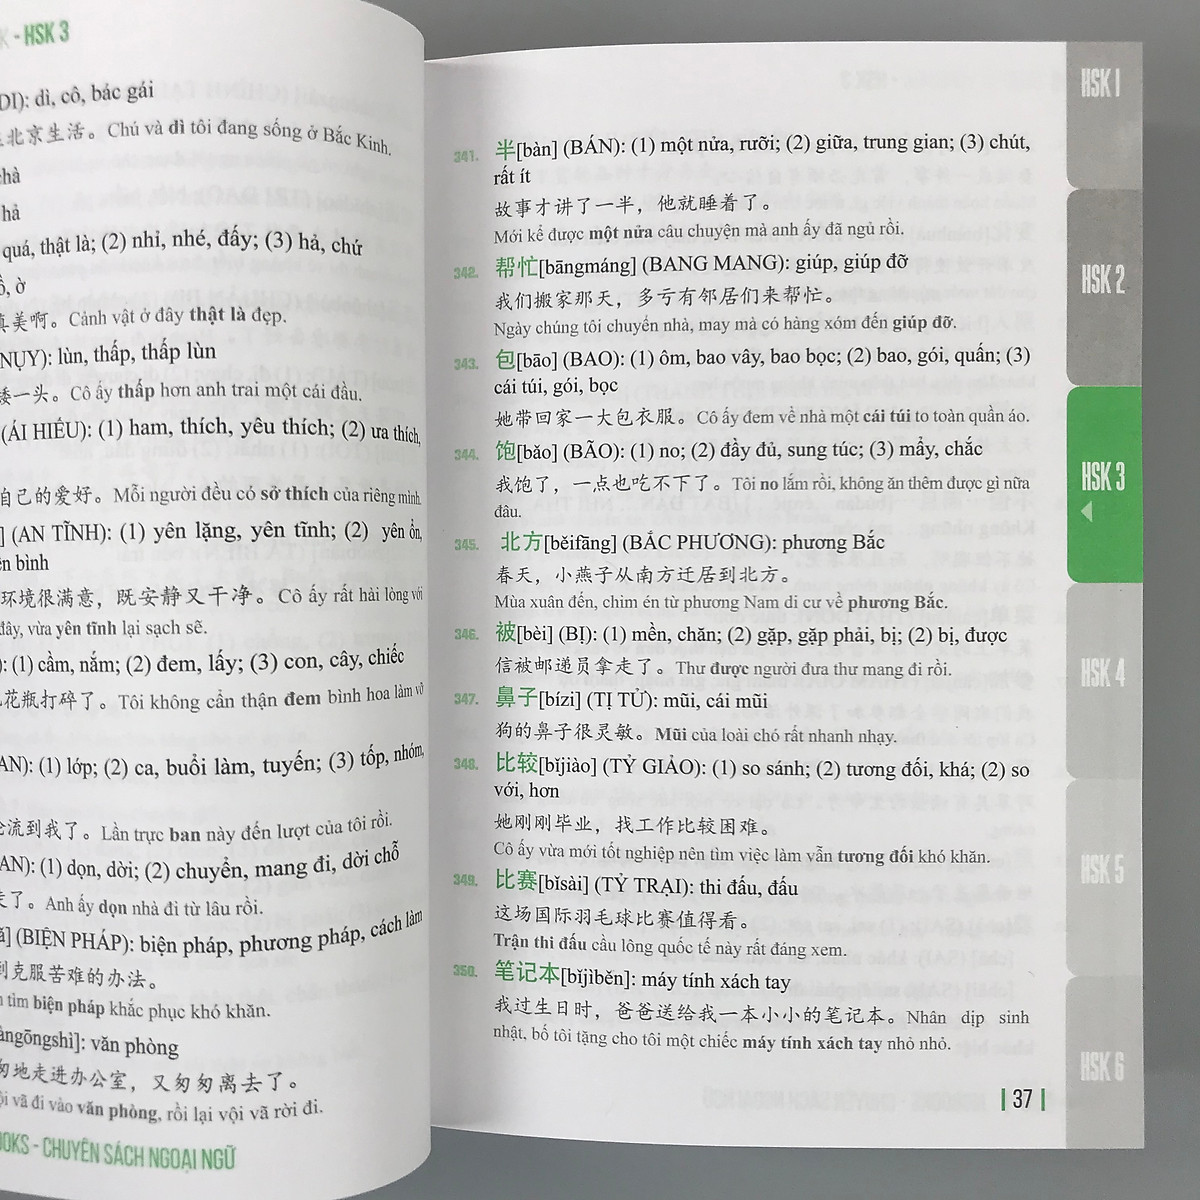 5000 Từ Vựng Tiếng Trung Bỏ Túi - Bí Kíp Chinh Phục Từ Vựng Kỳ Thi Hsk 1 - 6 PDF